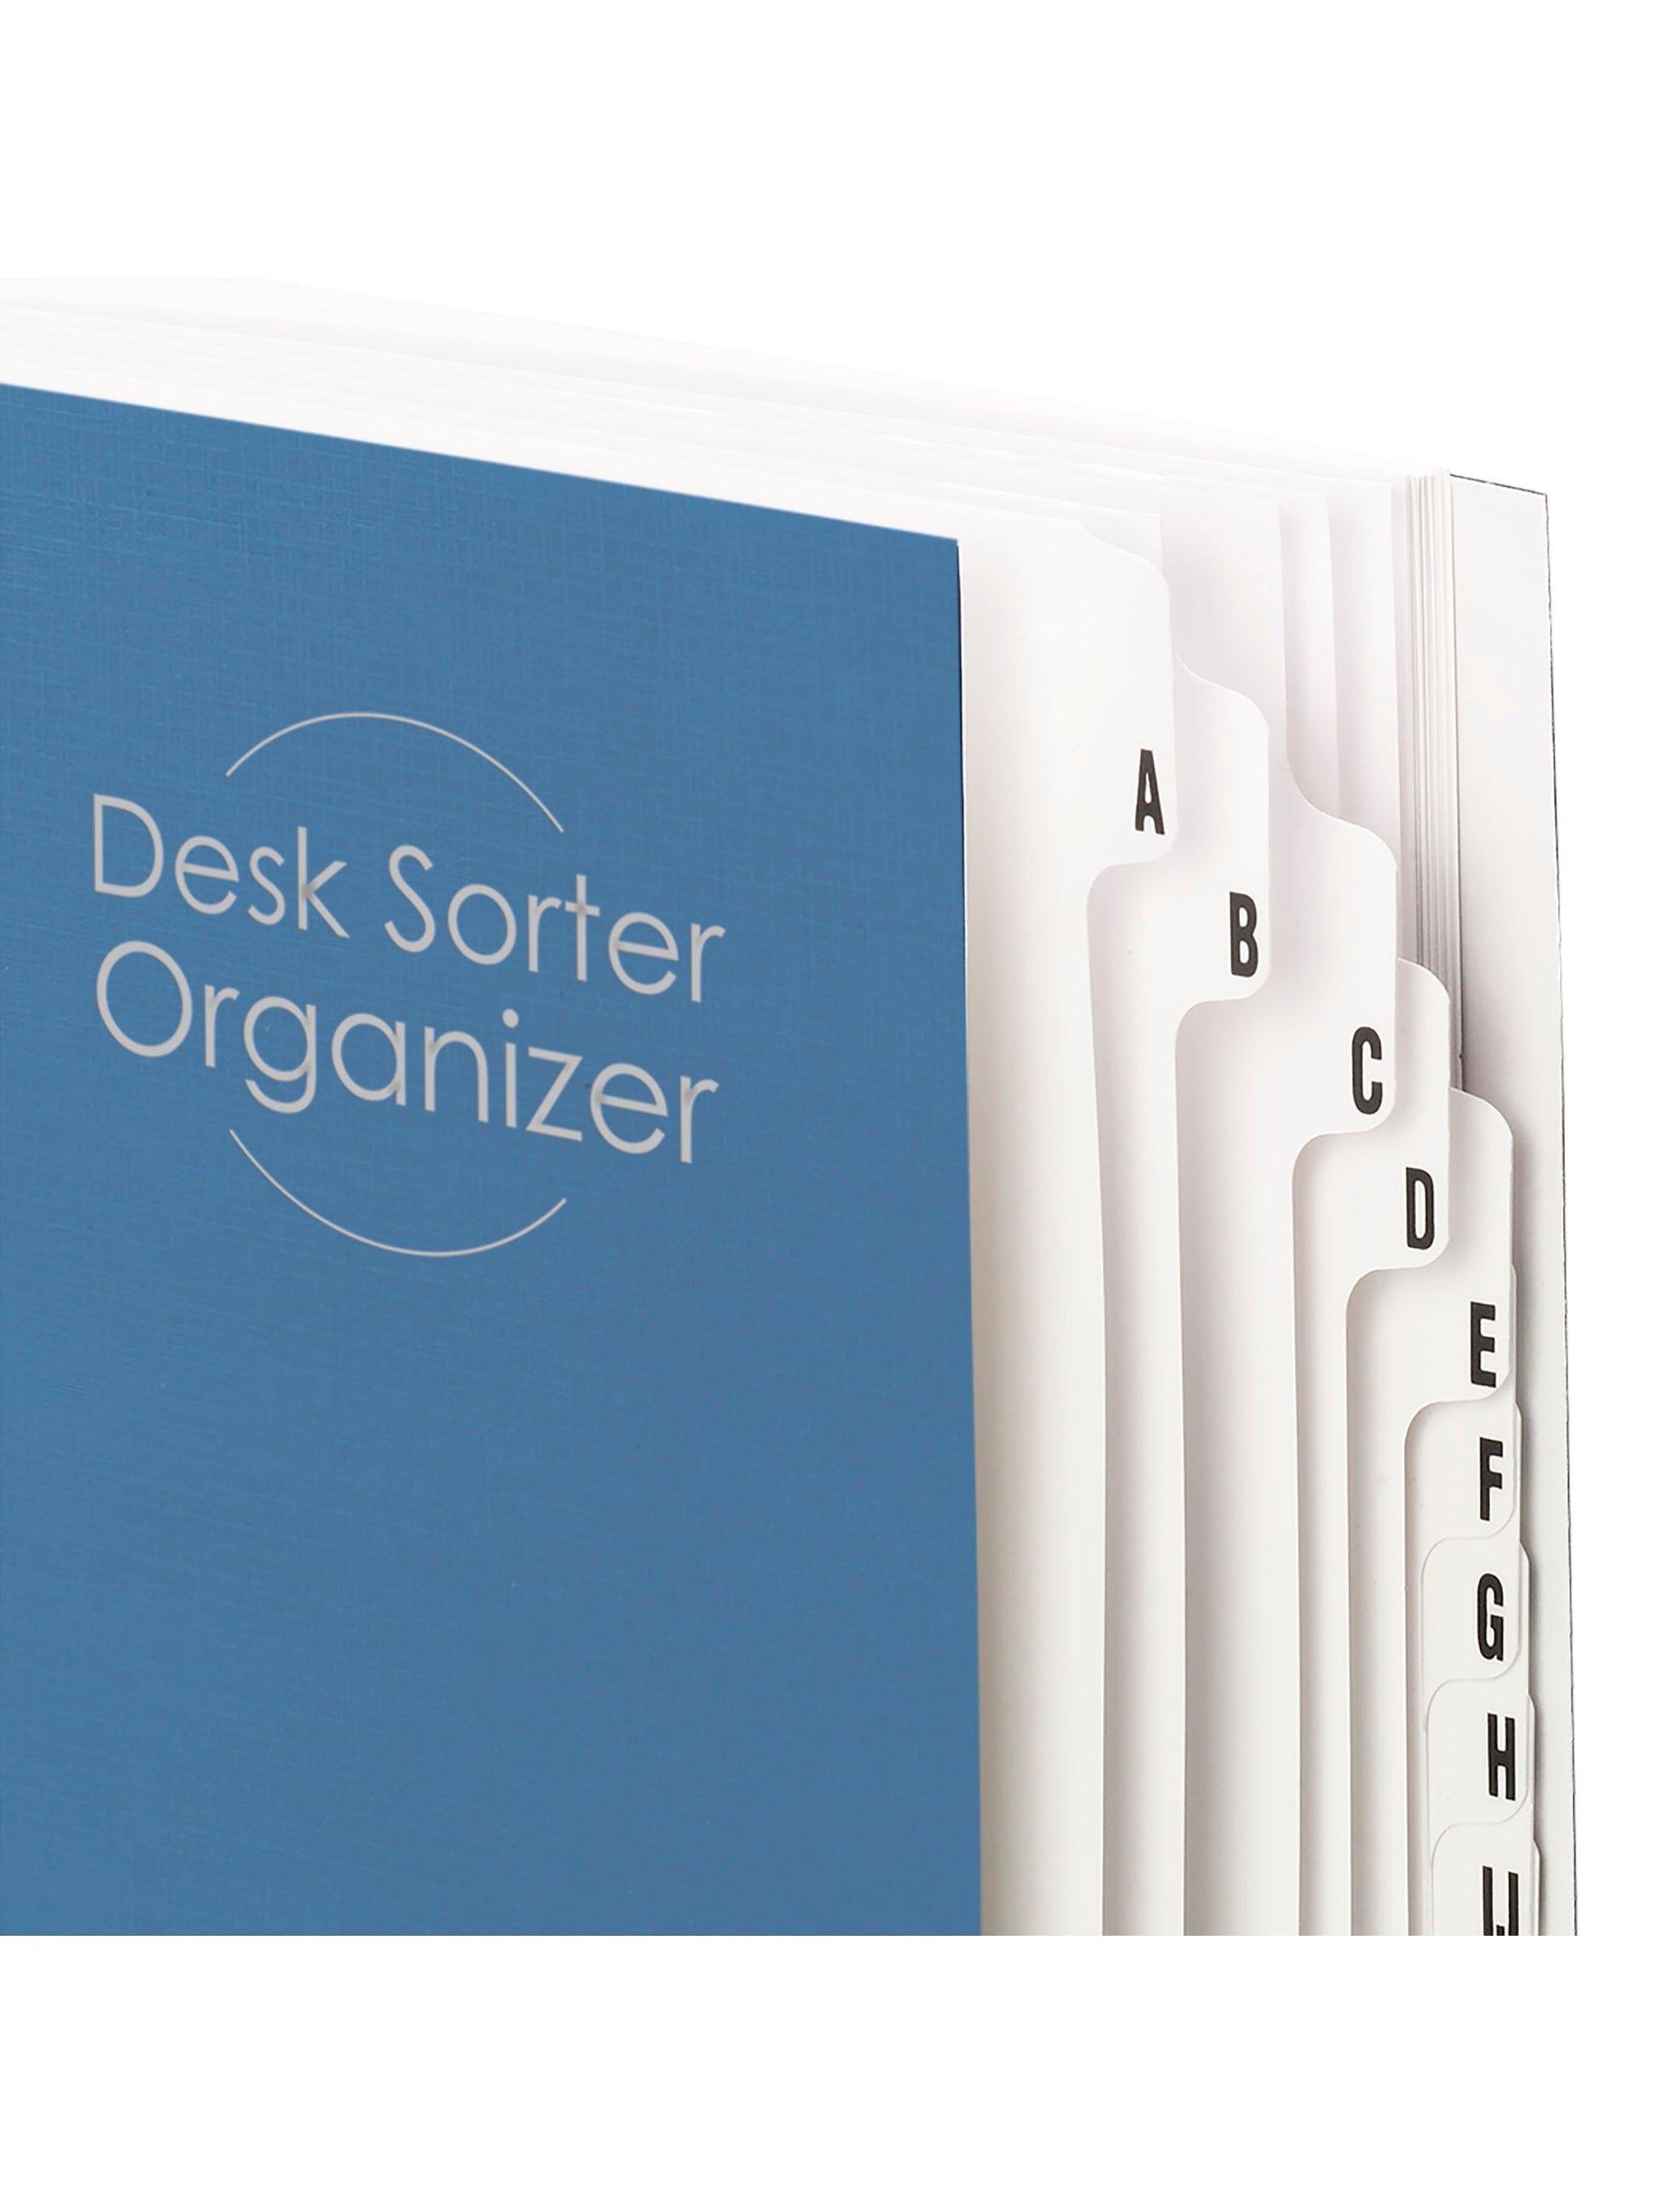 Desk File/Sorters, Dark Blue Color, Letter Size, Set of 1, 086486892827